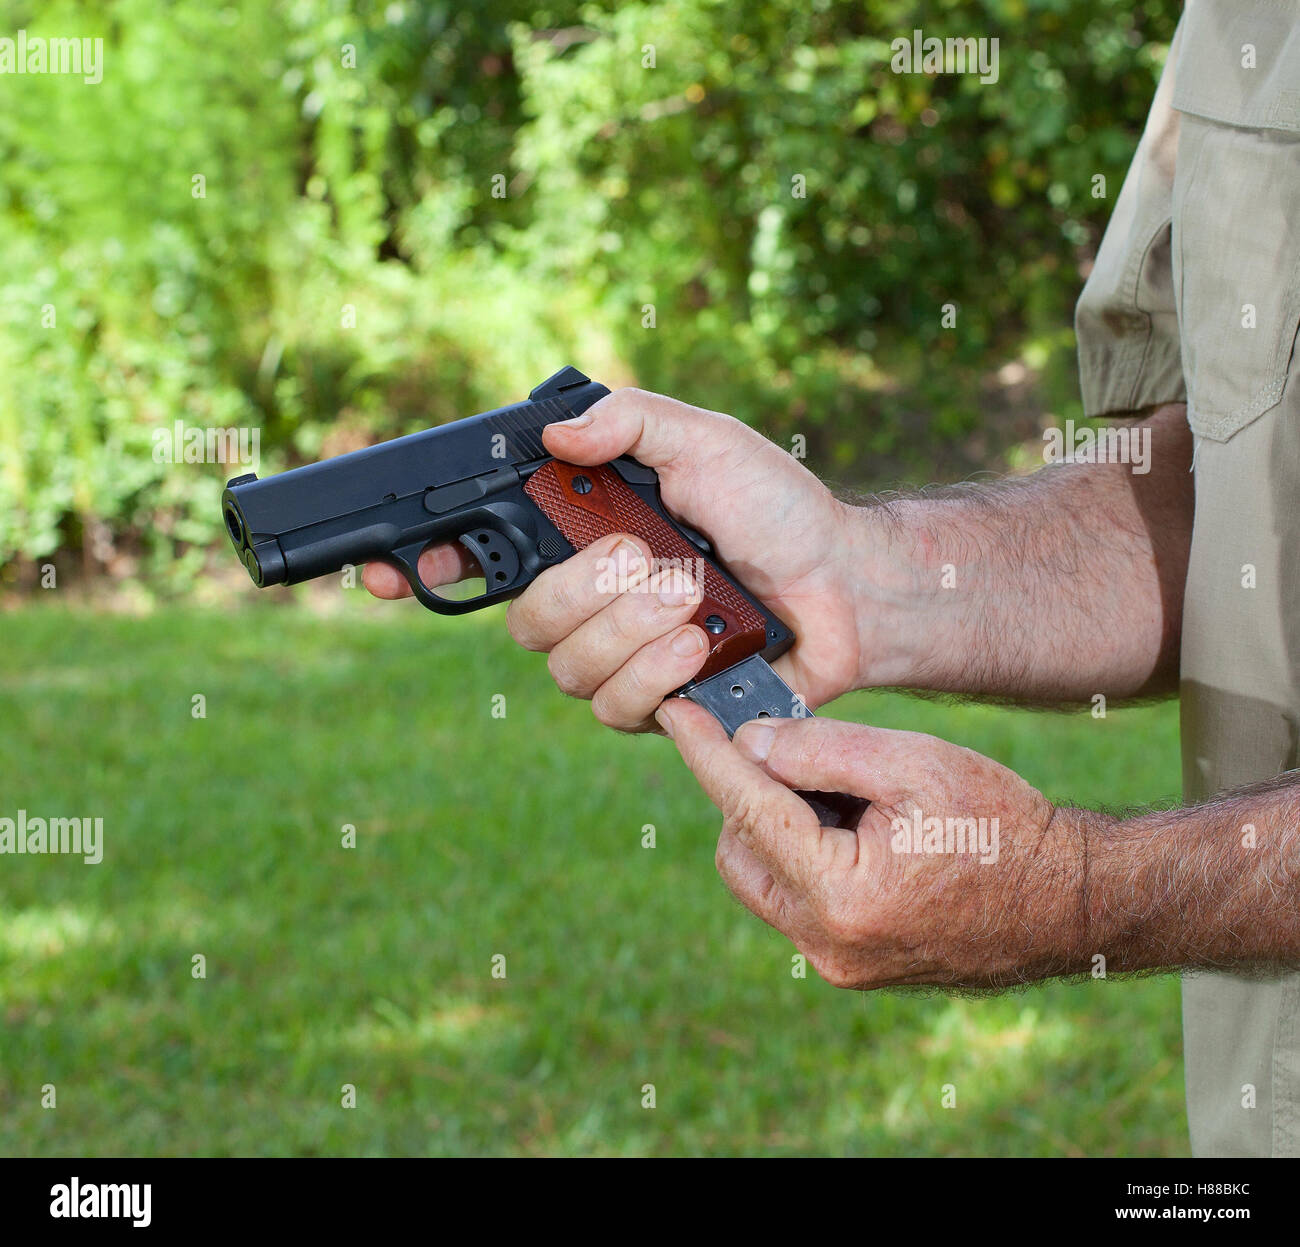 Magazine de couleur argent d'être insérées dans un pistolet Banque D'Images